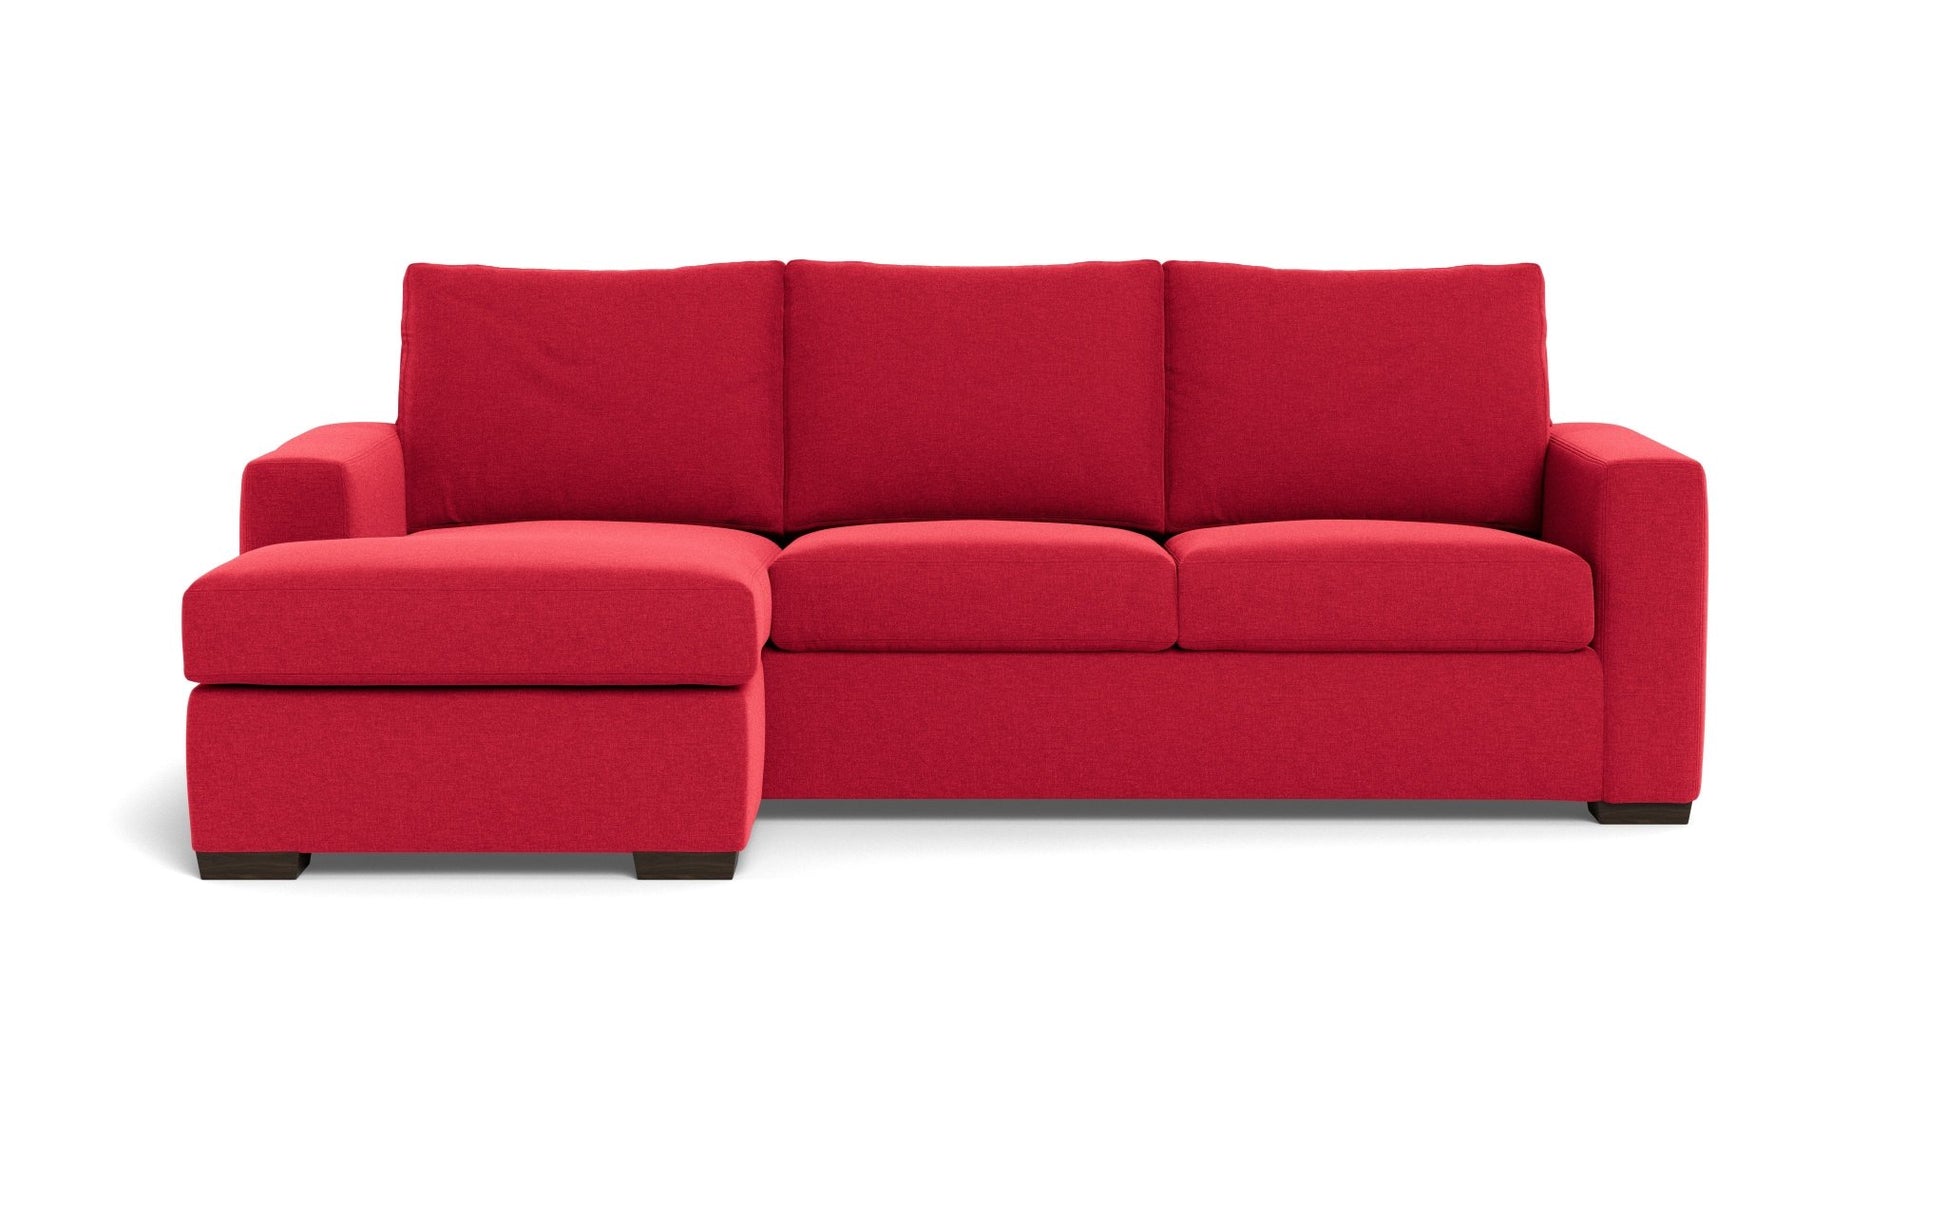 Mesa Reversible Chaise Sofa - Bennett Red